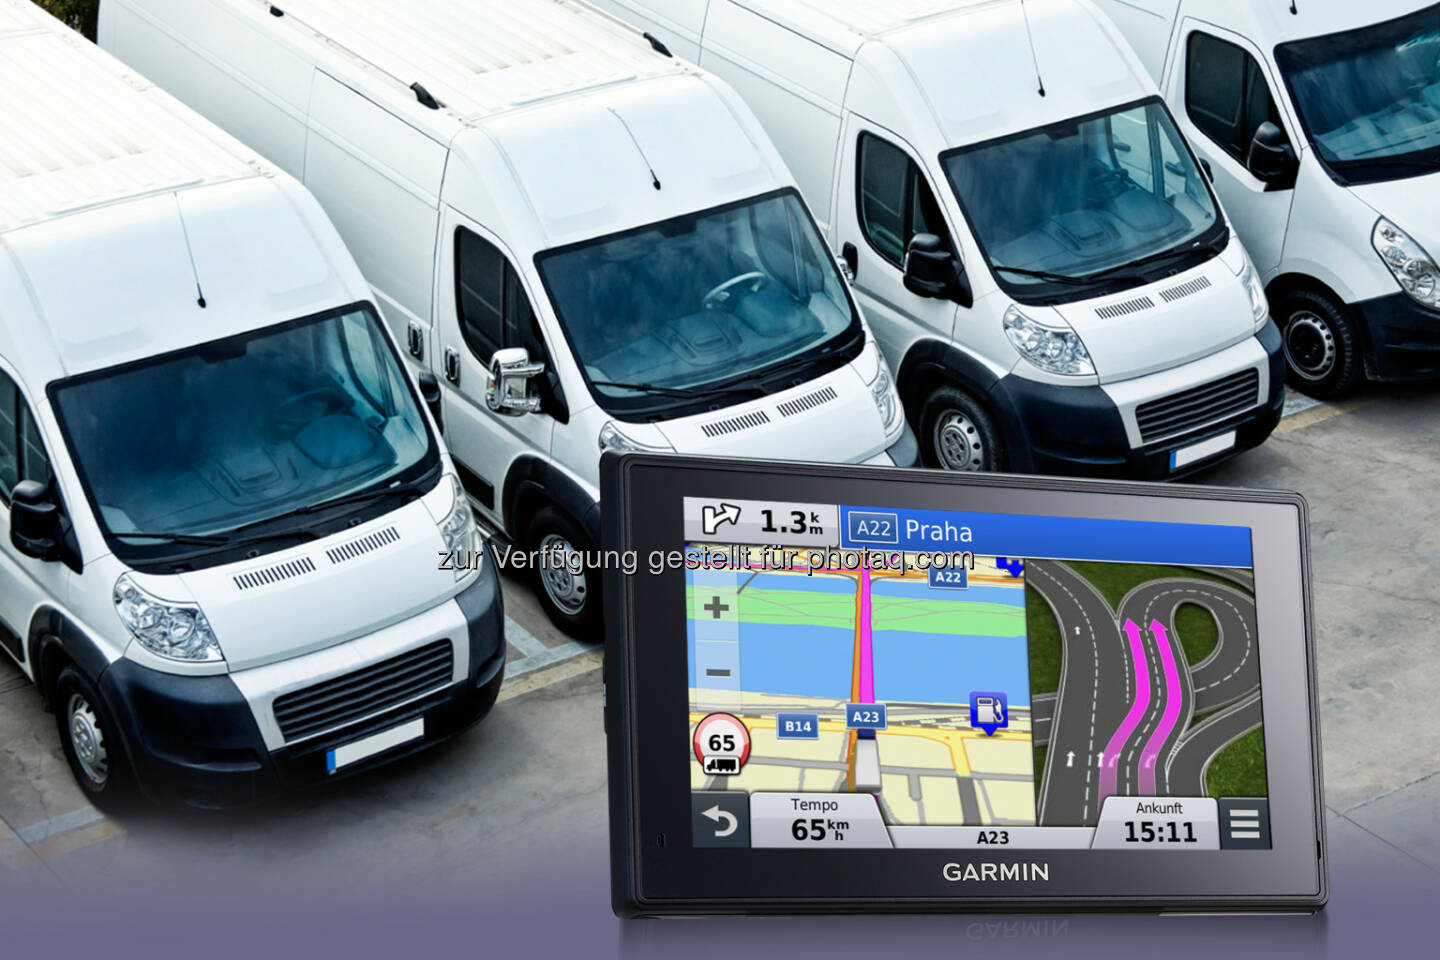 Garmin stellt auf Android basierend Modelle für Flottennavigation und -logistik vor (Bild: Garmin)